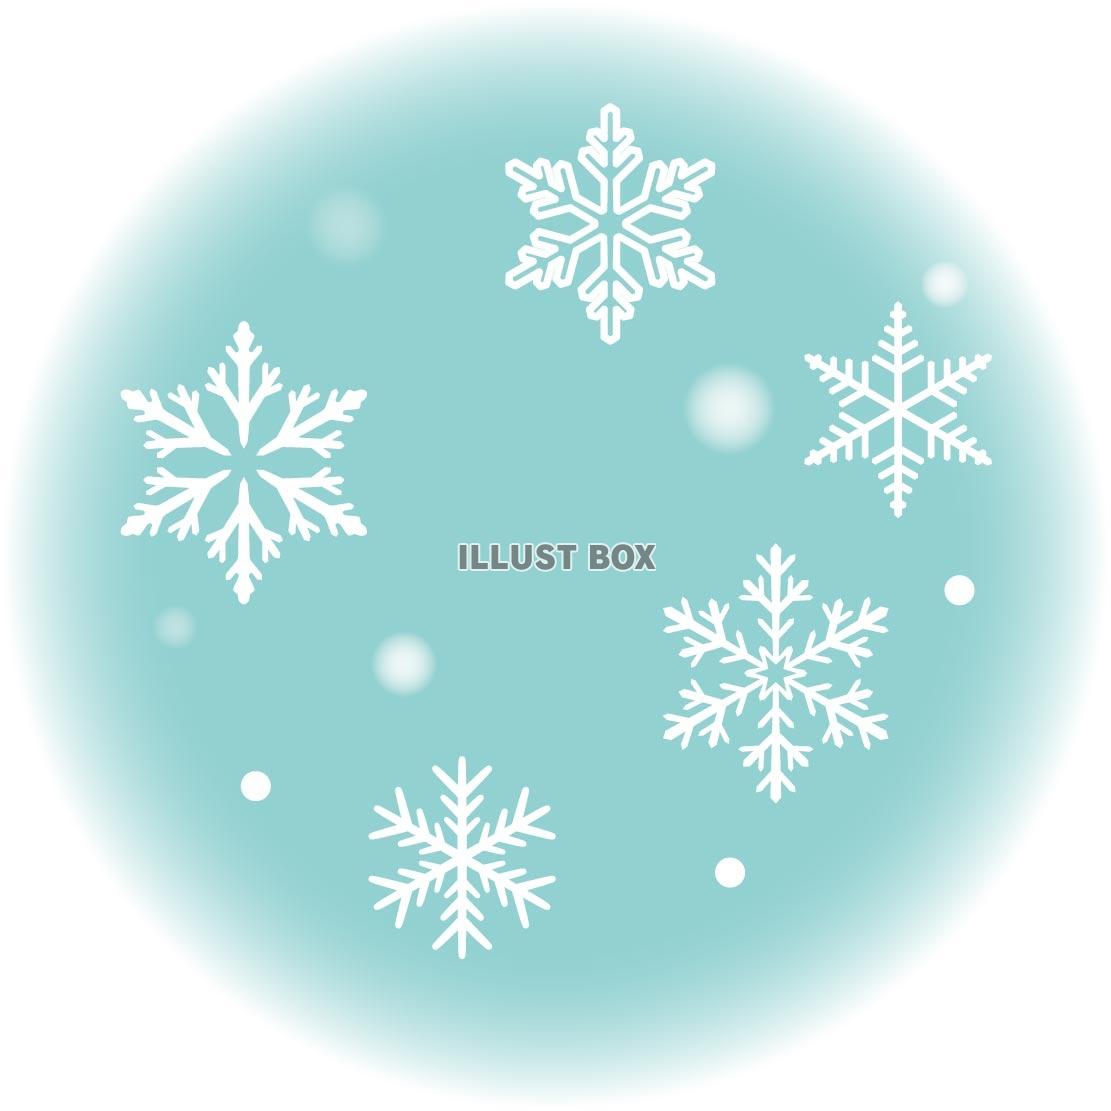 かわいい 雪の結晶イラストが無料 イラストボックス